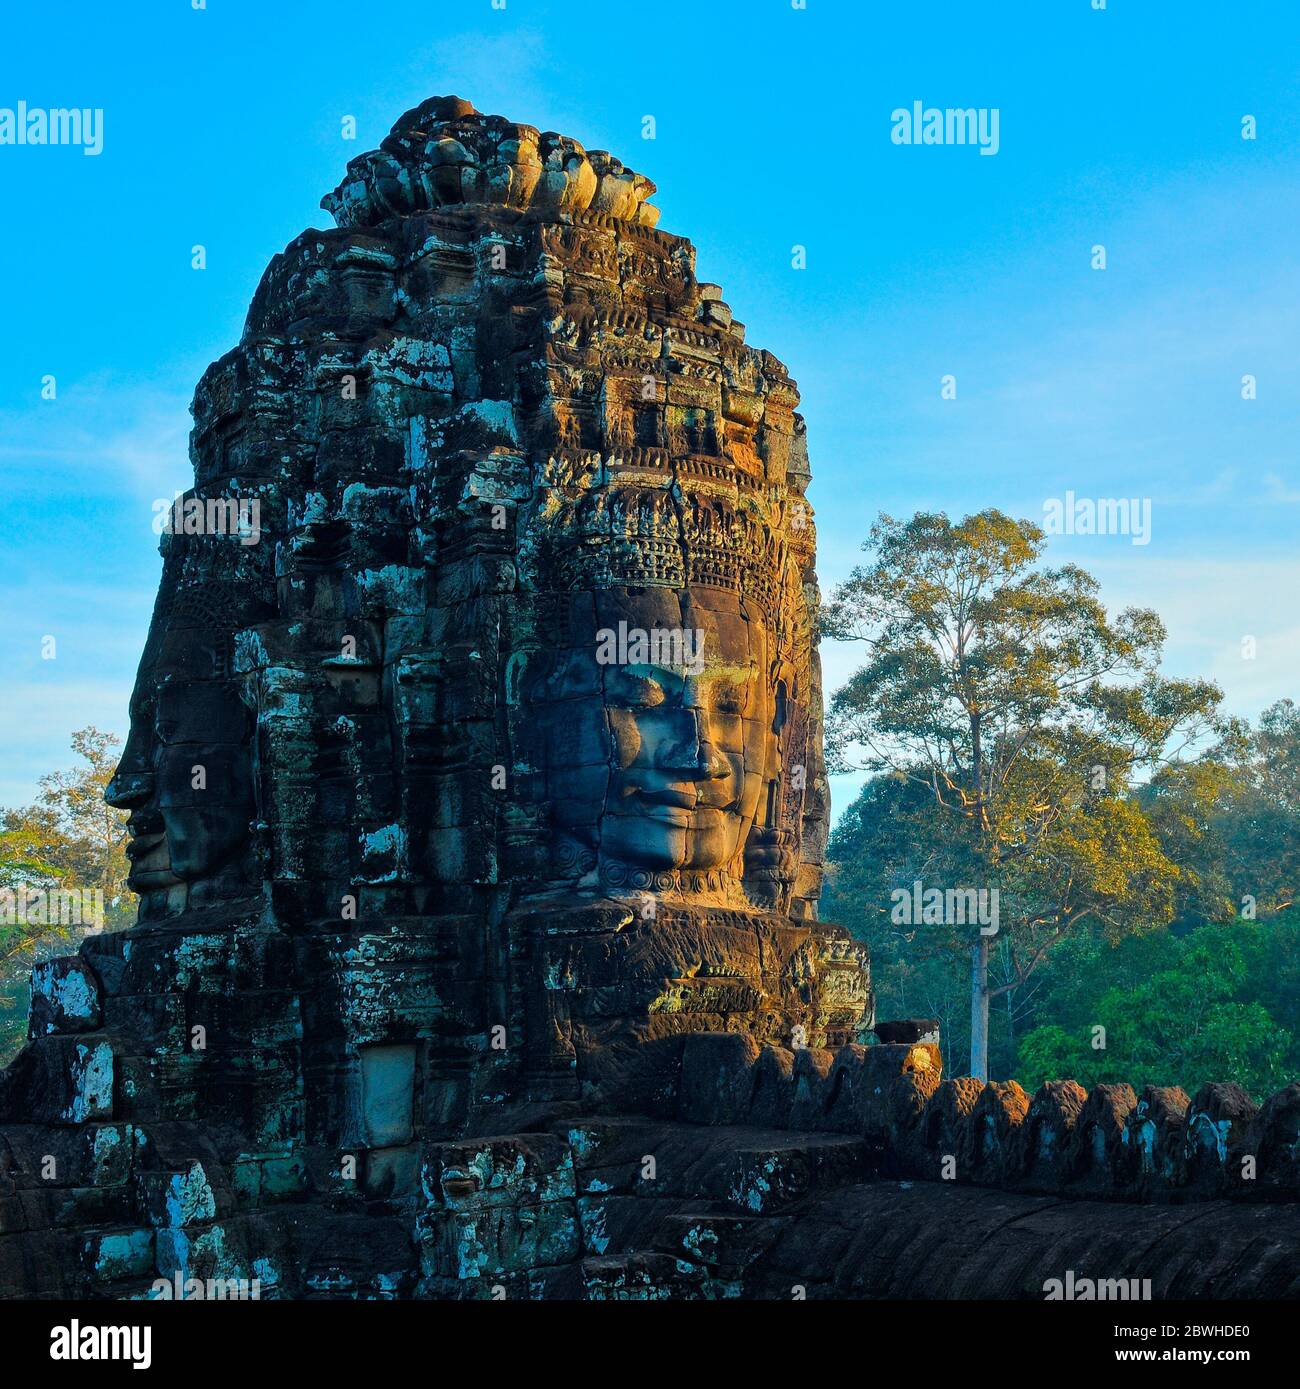 Ein Buddha-Gesicht beleuchtet bei Sonnenaufgang im Bayon-Tempel mit Regenwald im Hintergrund, Angkor Thom, Siem Reap, Kambodscha. Stockfoto